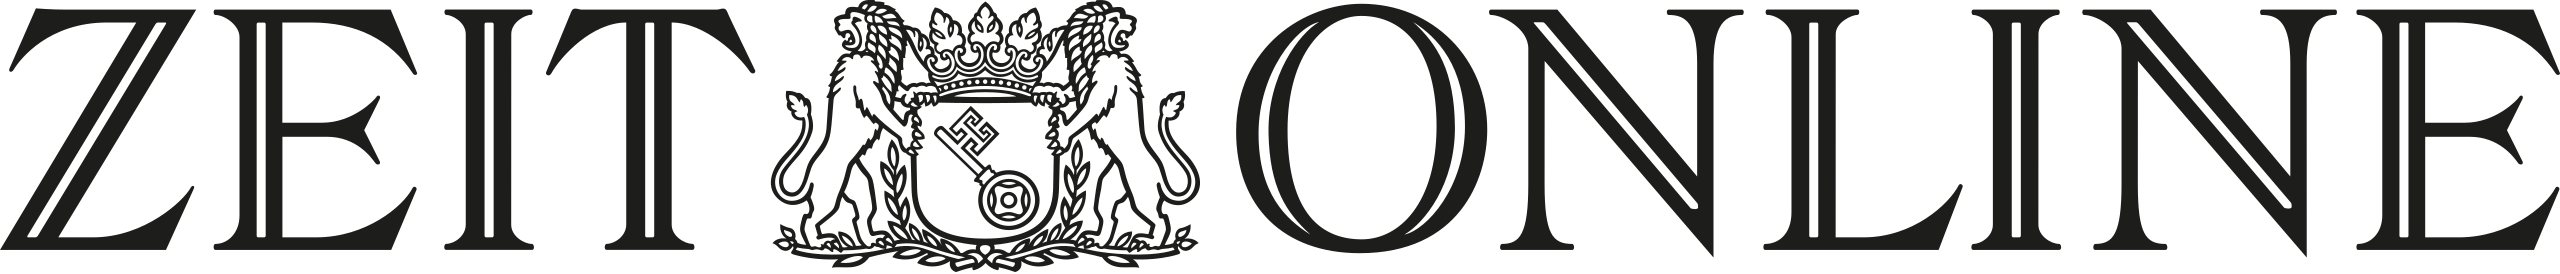 zeit-online-logo